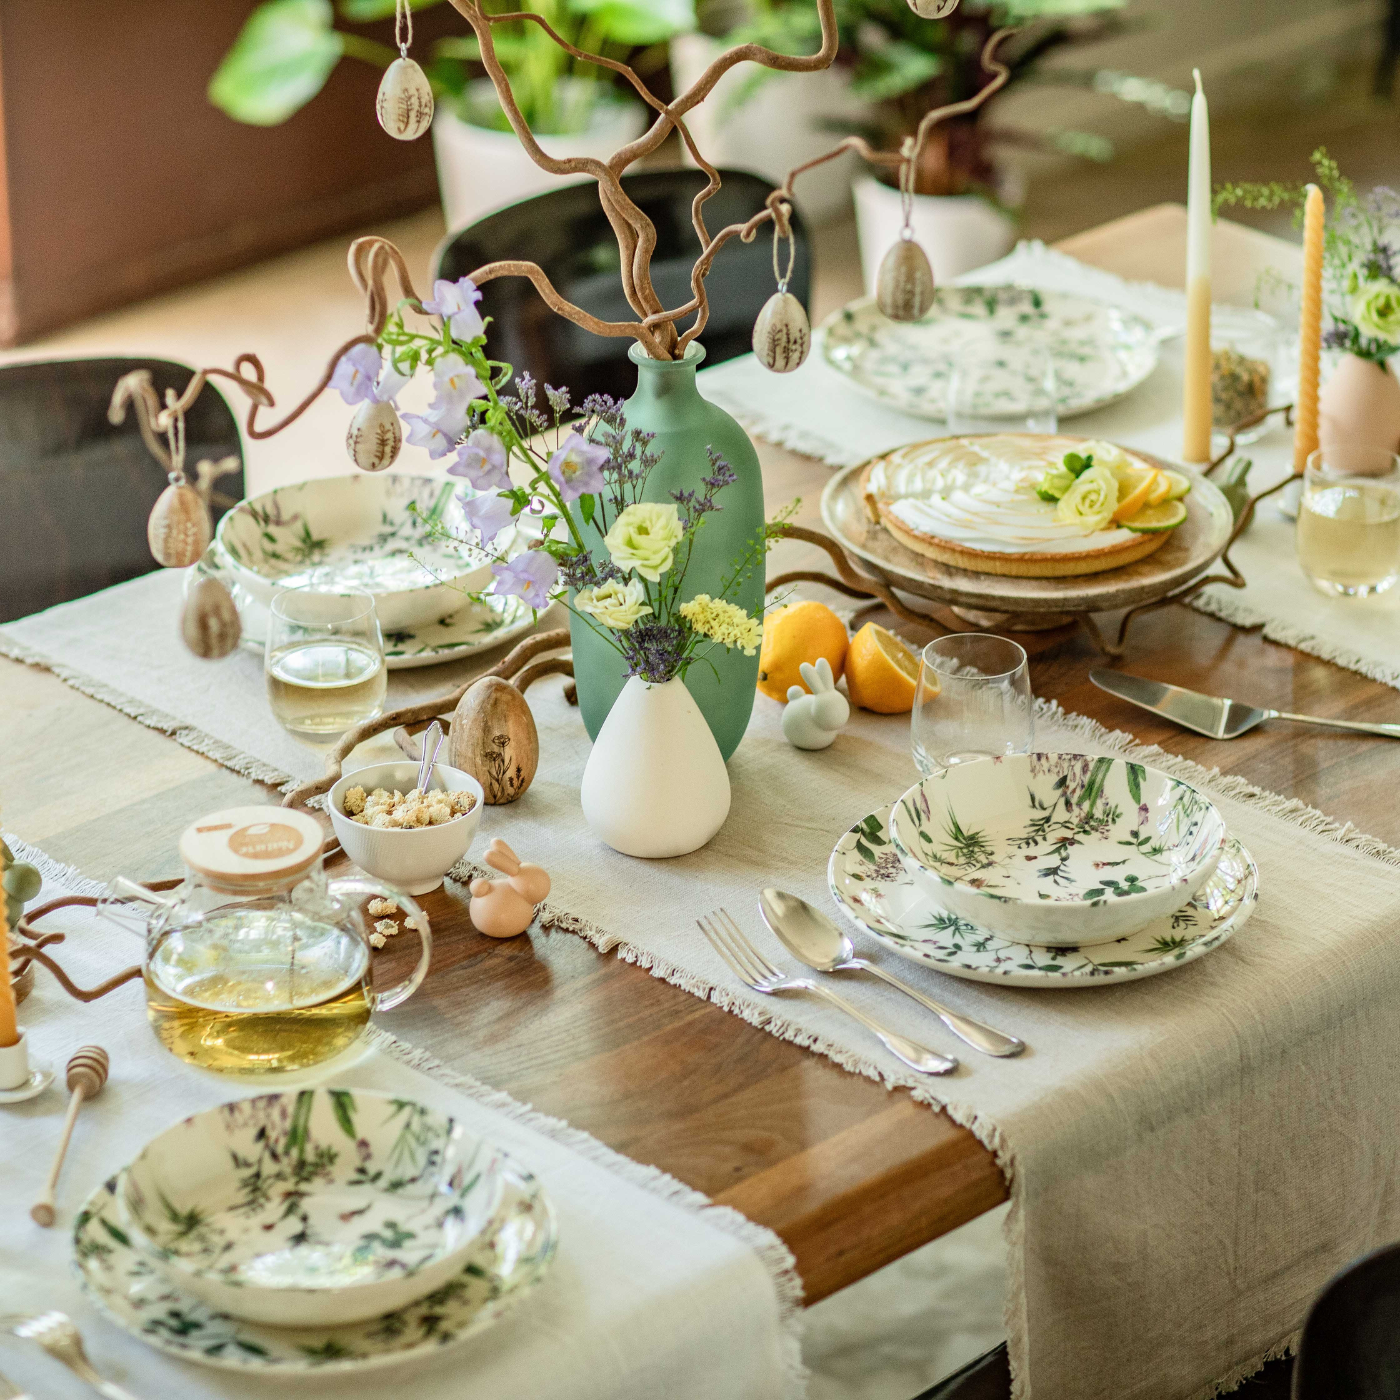 Une table à manger décorée pour fêter Pâques